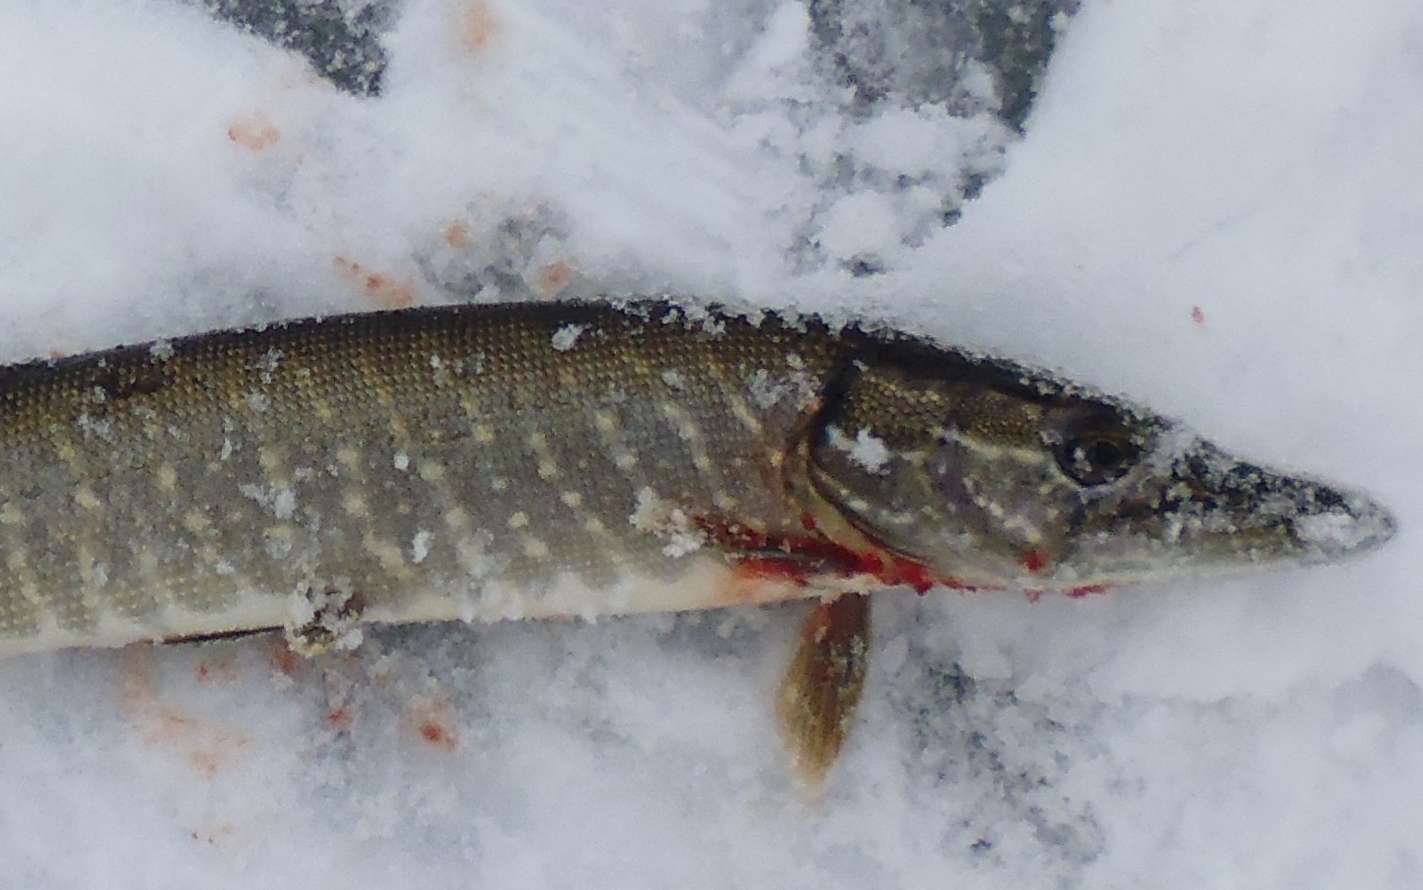 Игра зимняя рыбалка на жерлицы: сезонные ловушки для любителей рыбалки